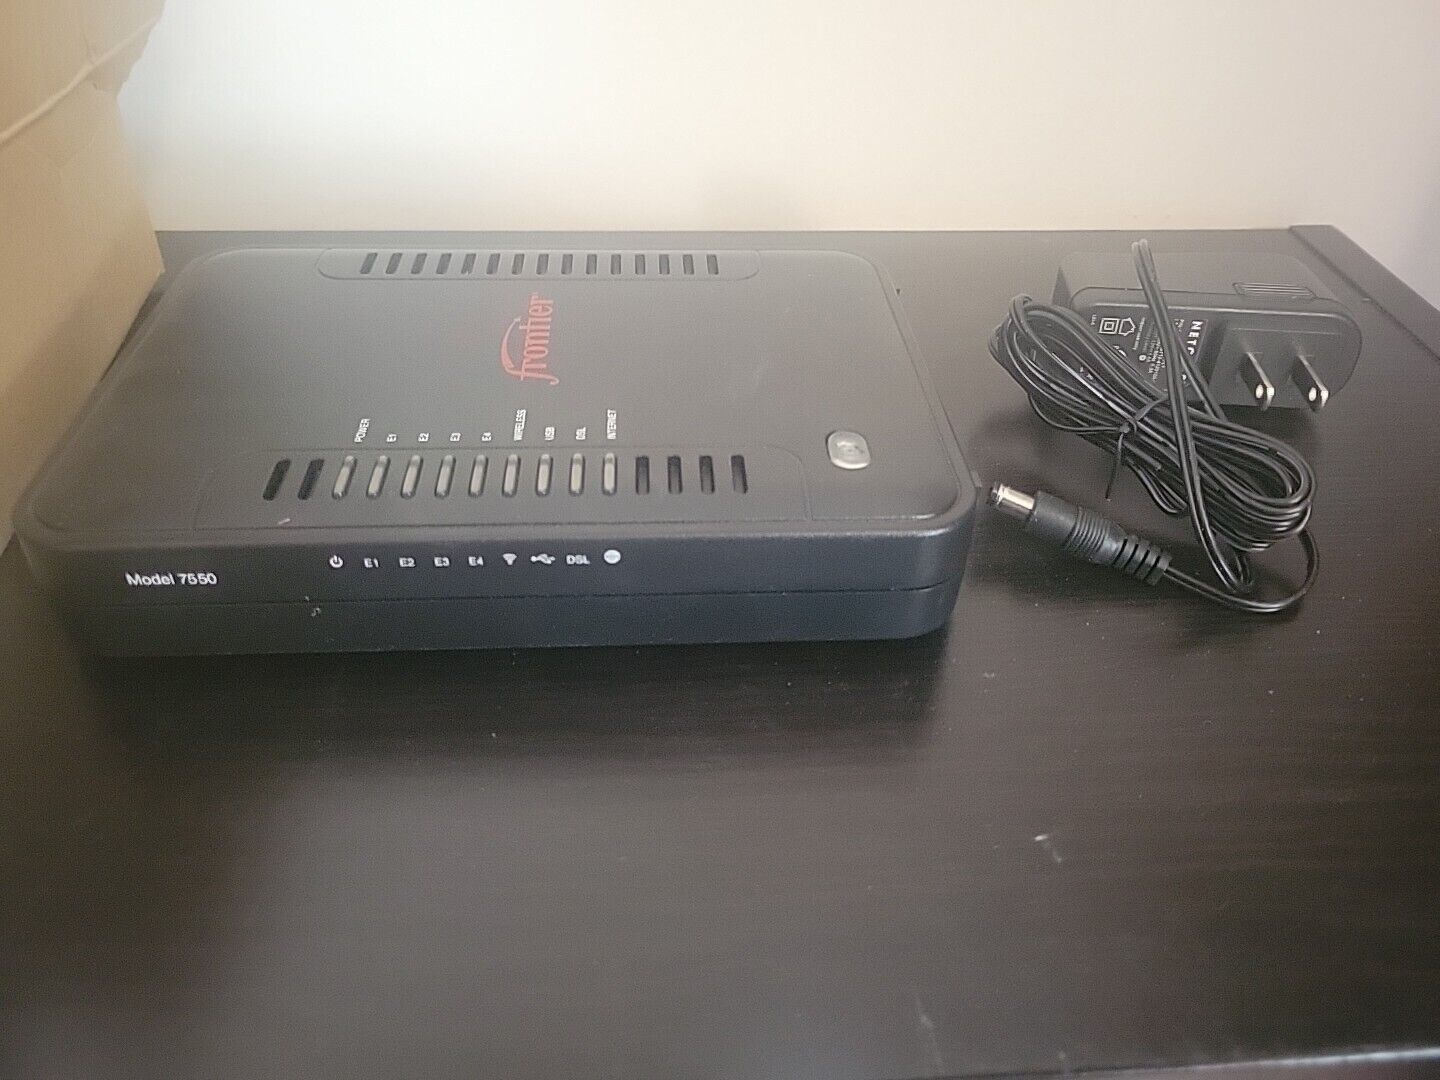 Frontier ADSL2+ Netgear Model 7550 B90-755044-15 Modem Router